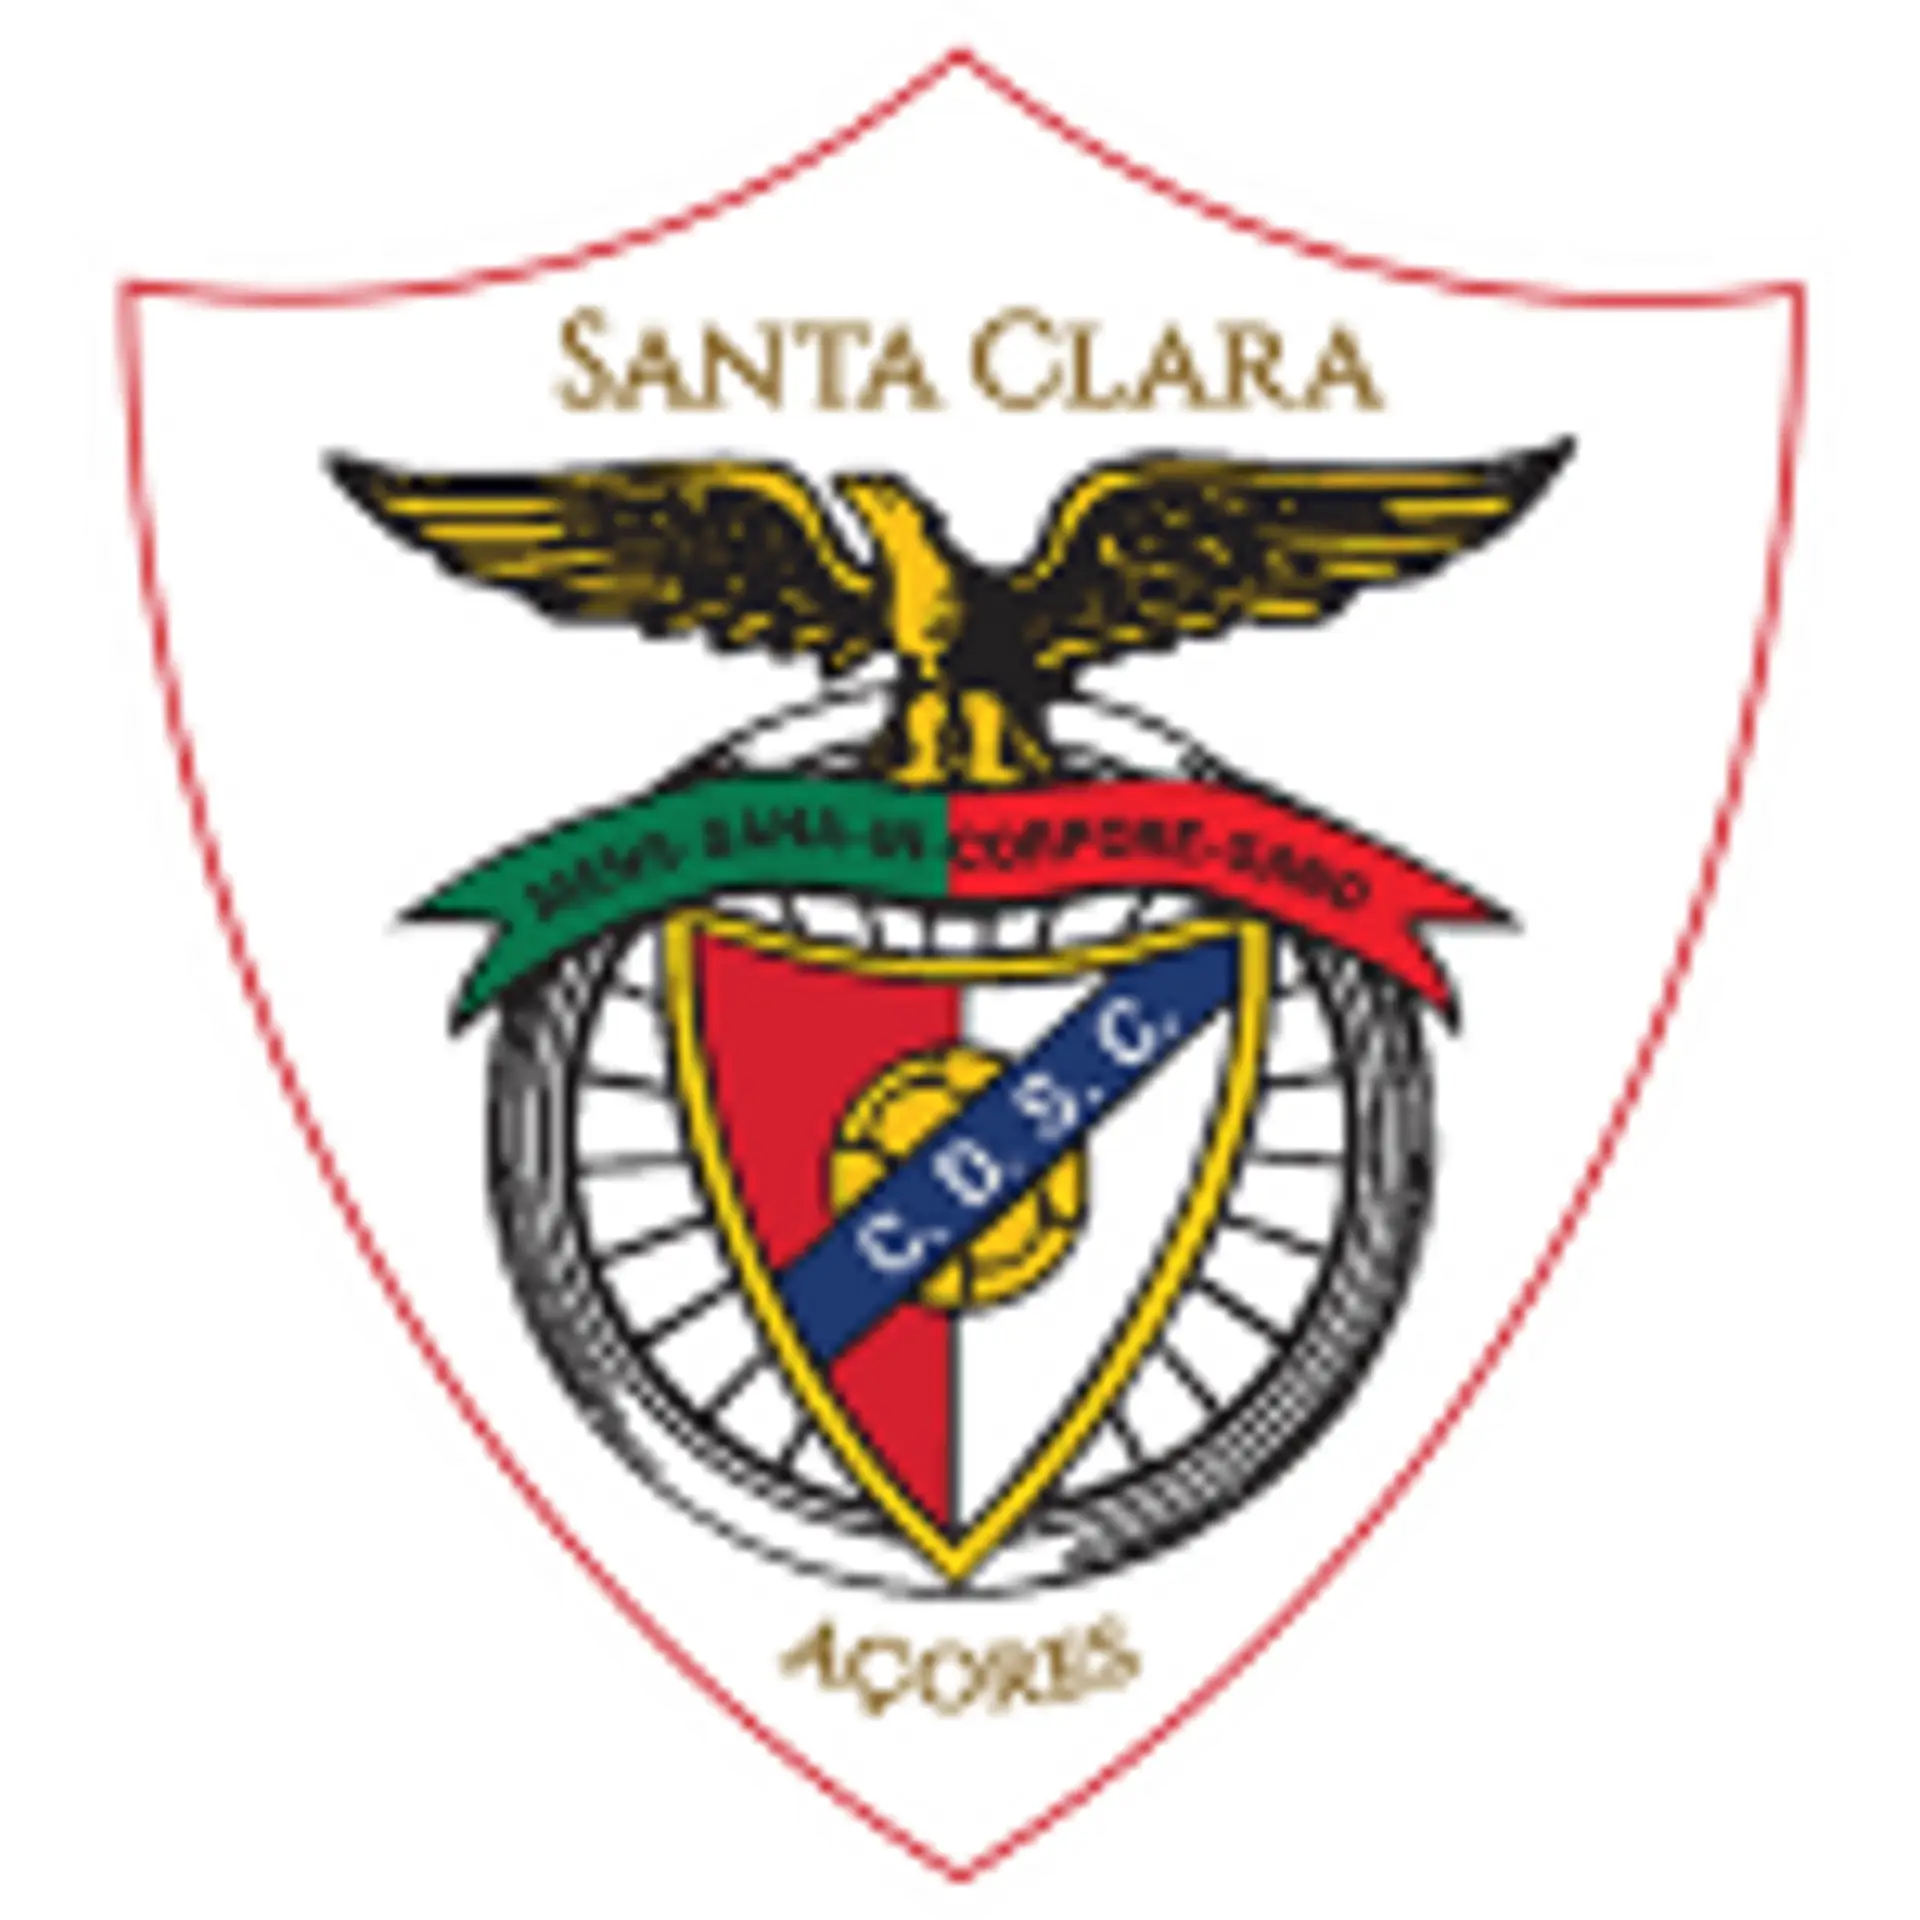 CD Santa Clara Clasificaciones 